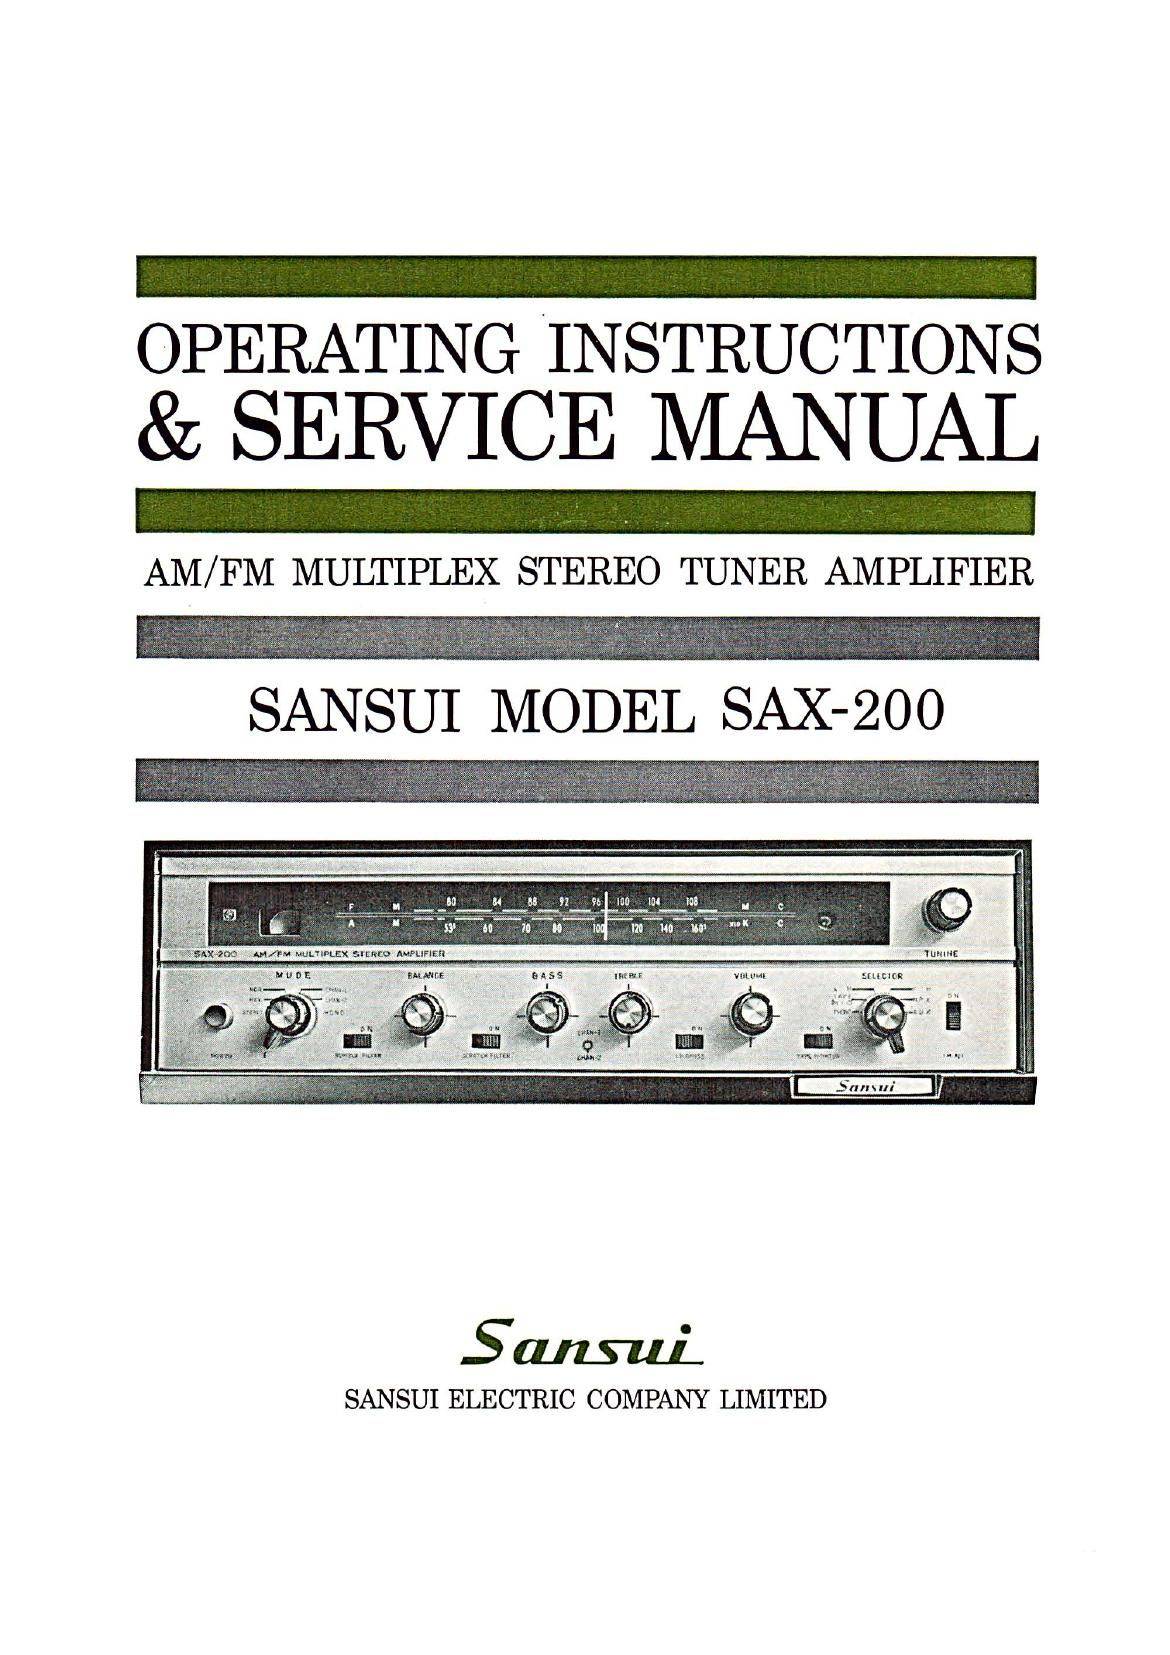 Sansui SAX-200